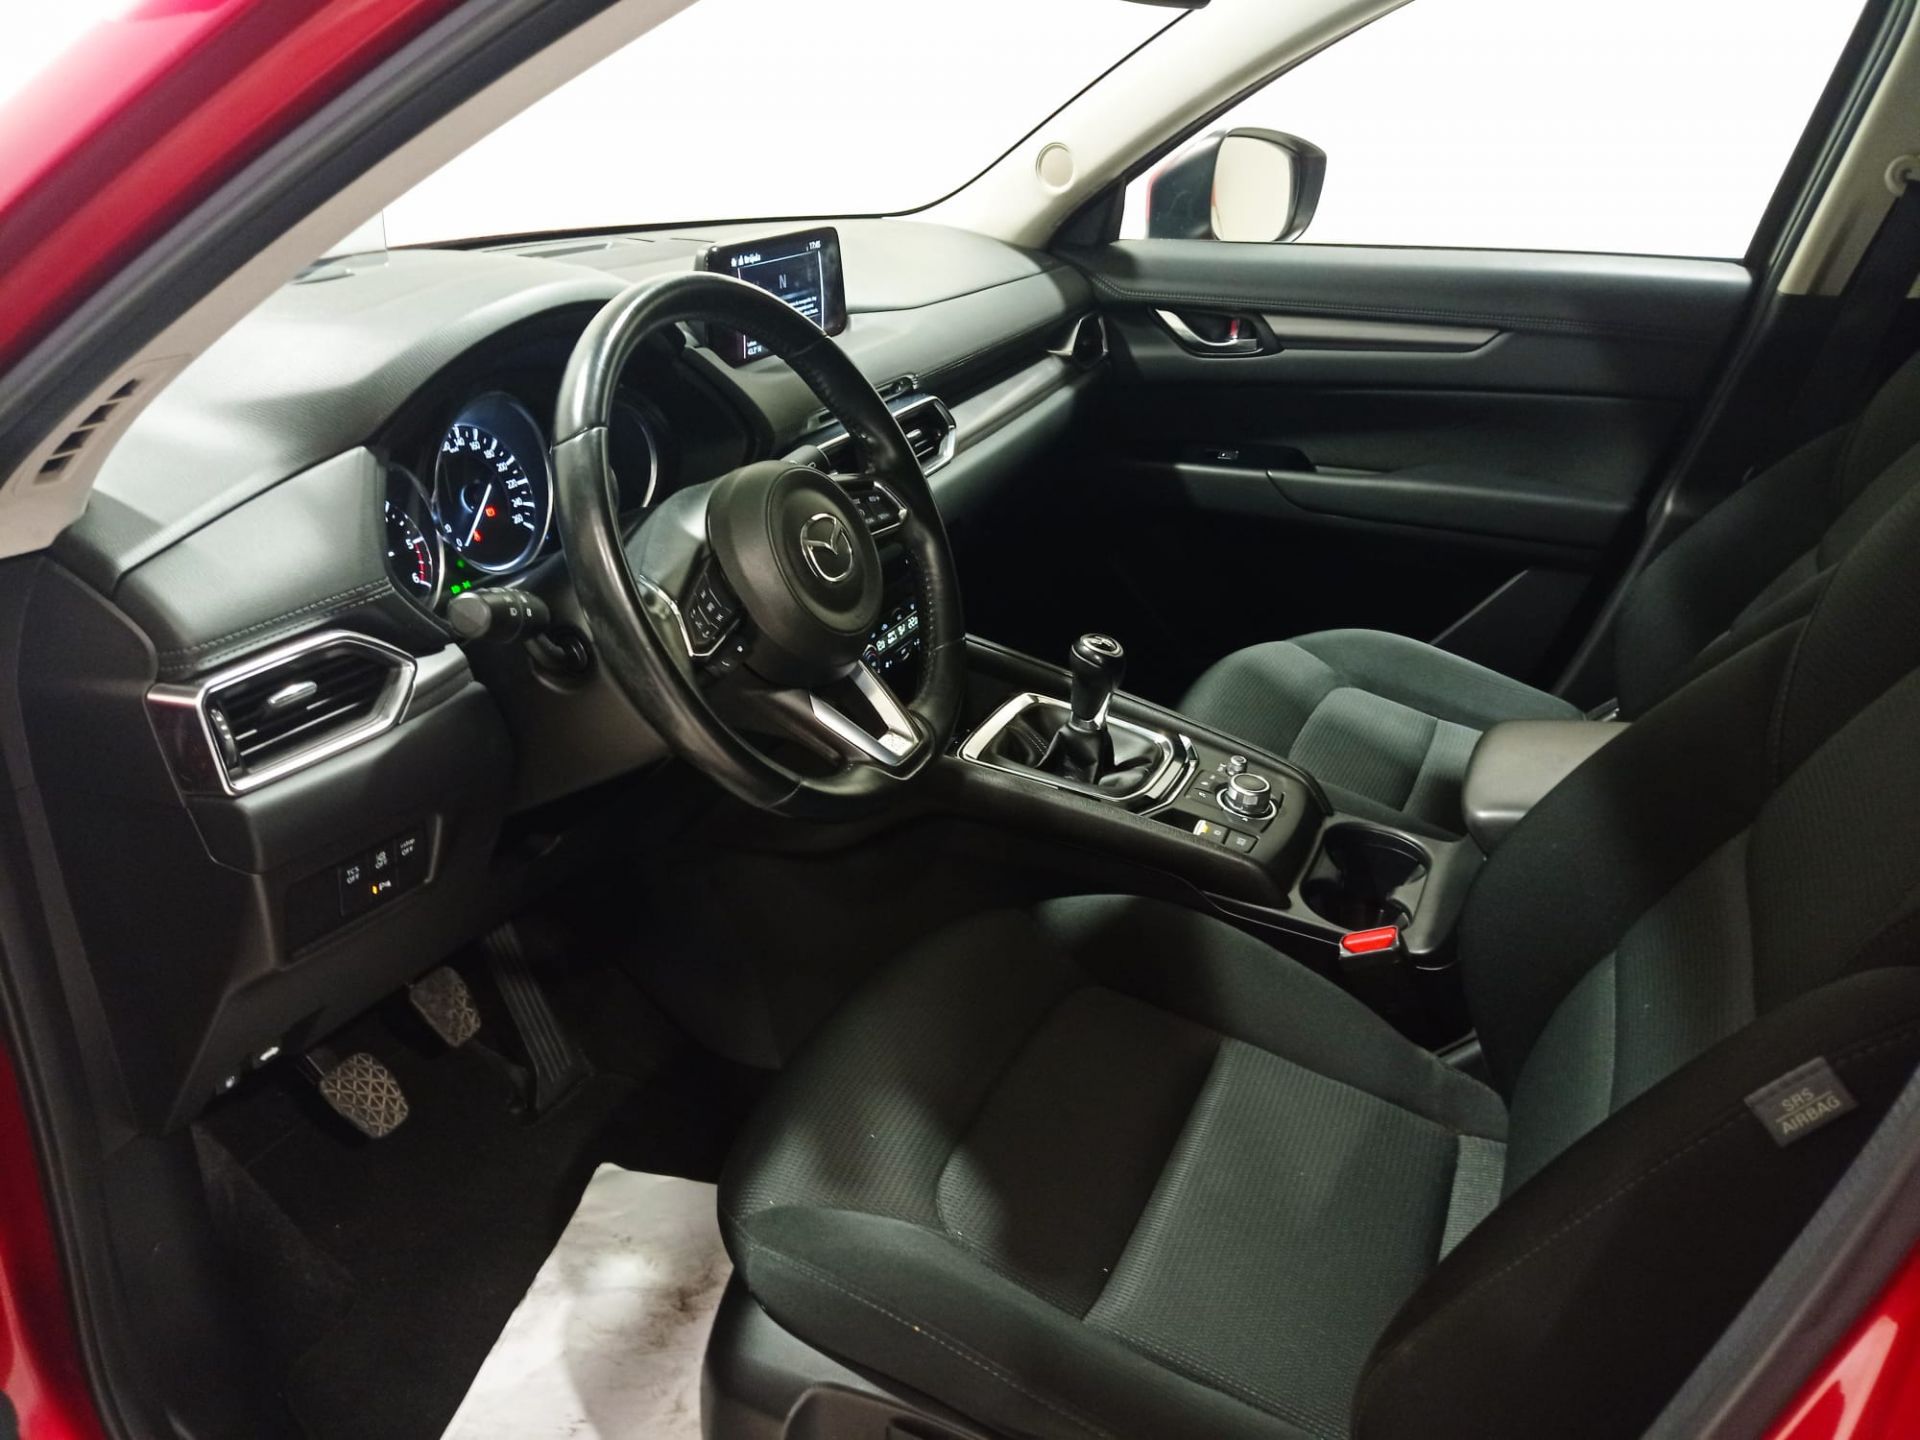 Mazda CX-5 2.2 DE 110kW (150cv) Evolution 2WD nuevo Guipúzcoa